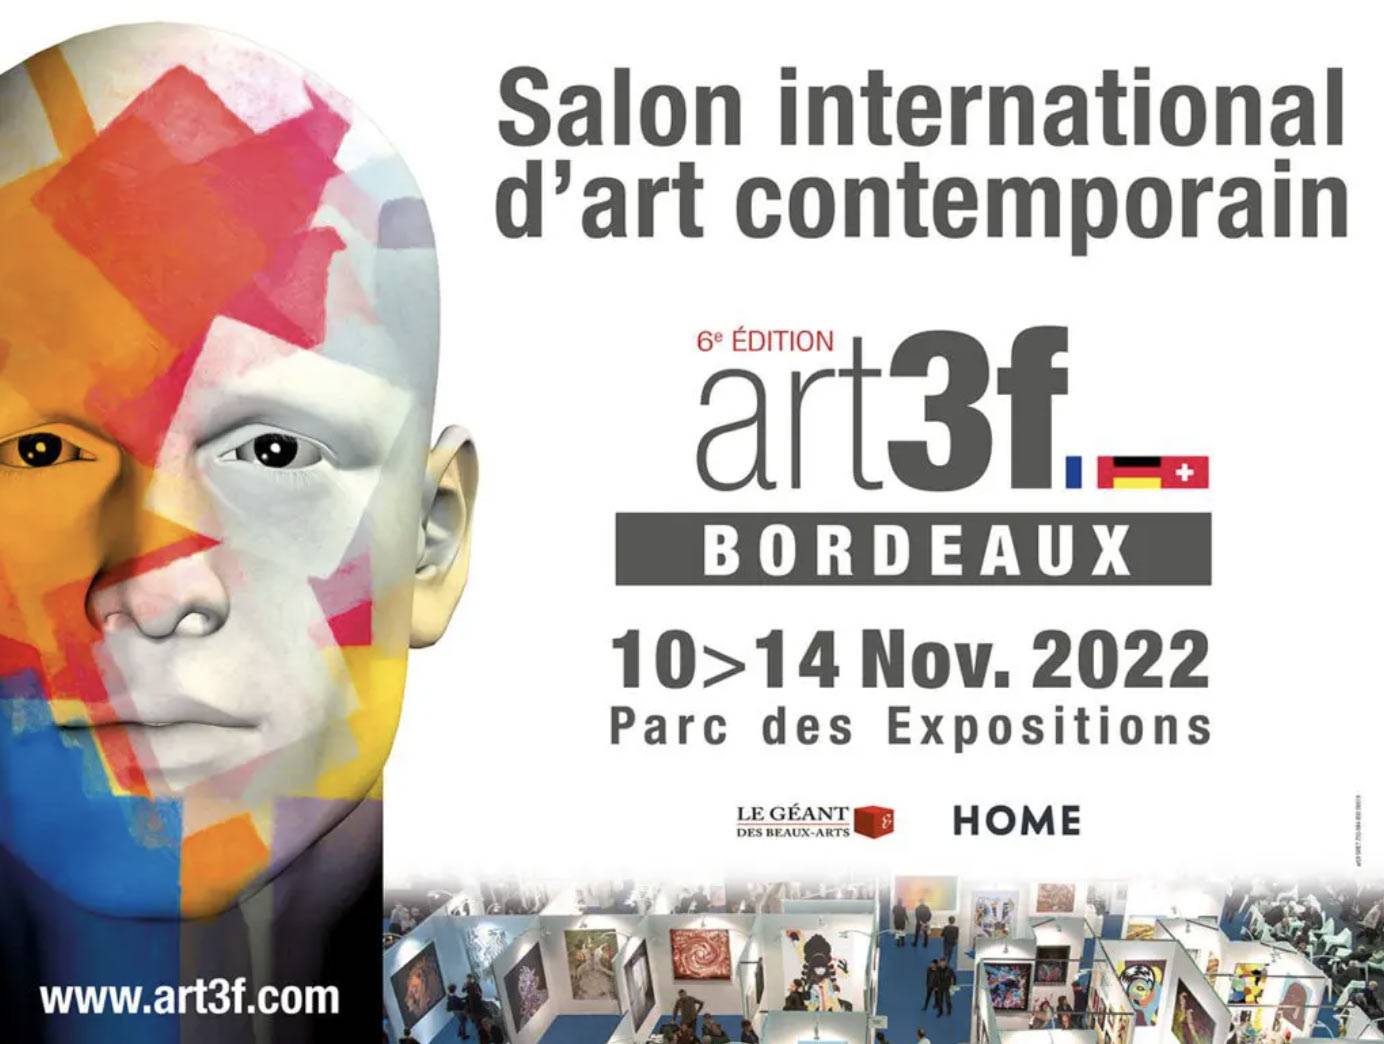 Salon international d’art contemporain - 6 ème Edition